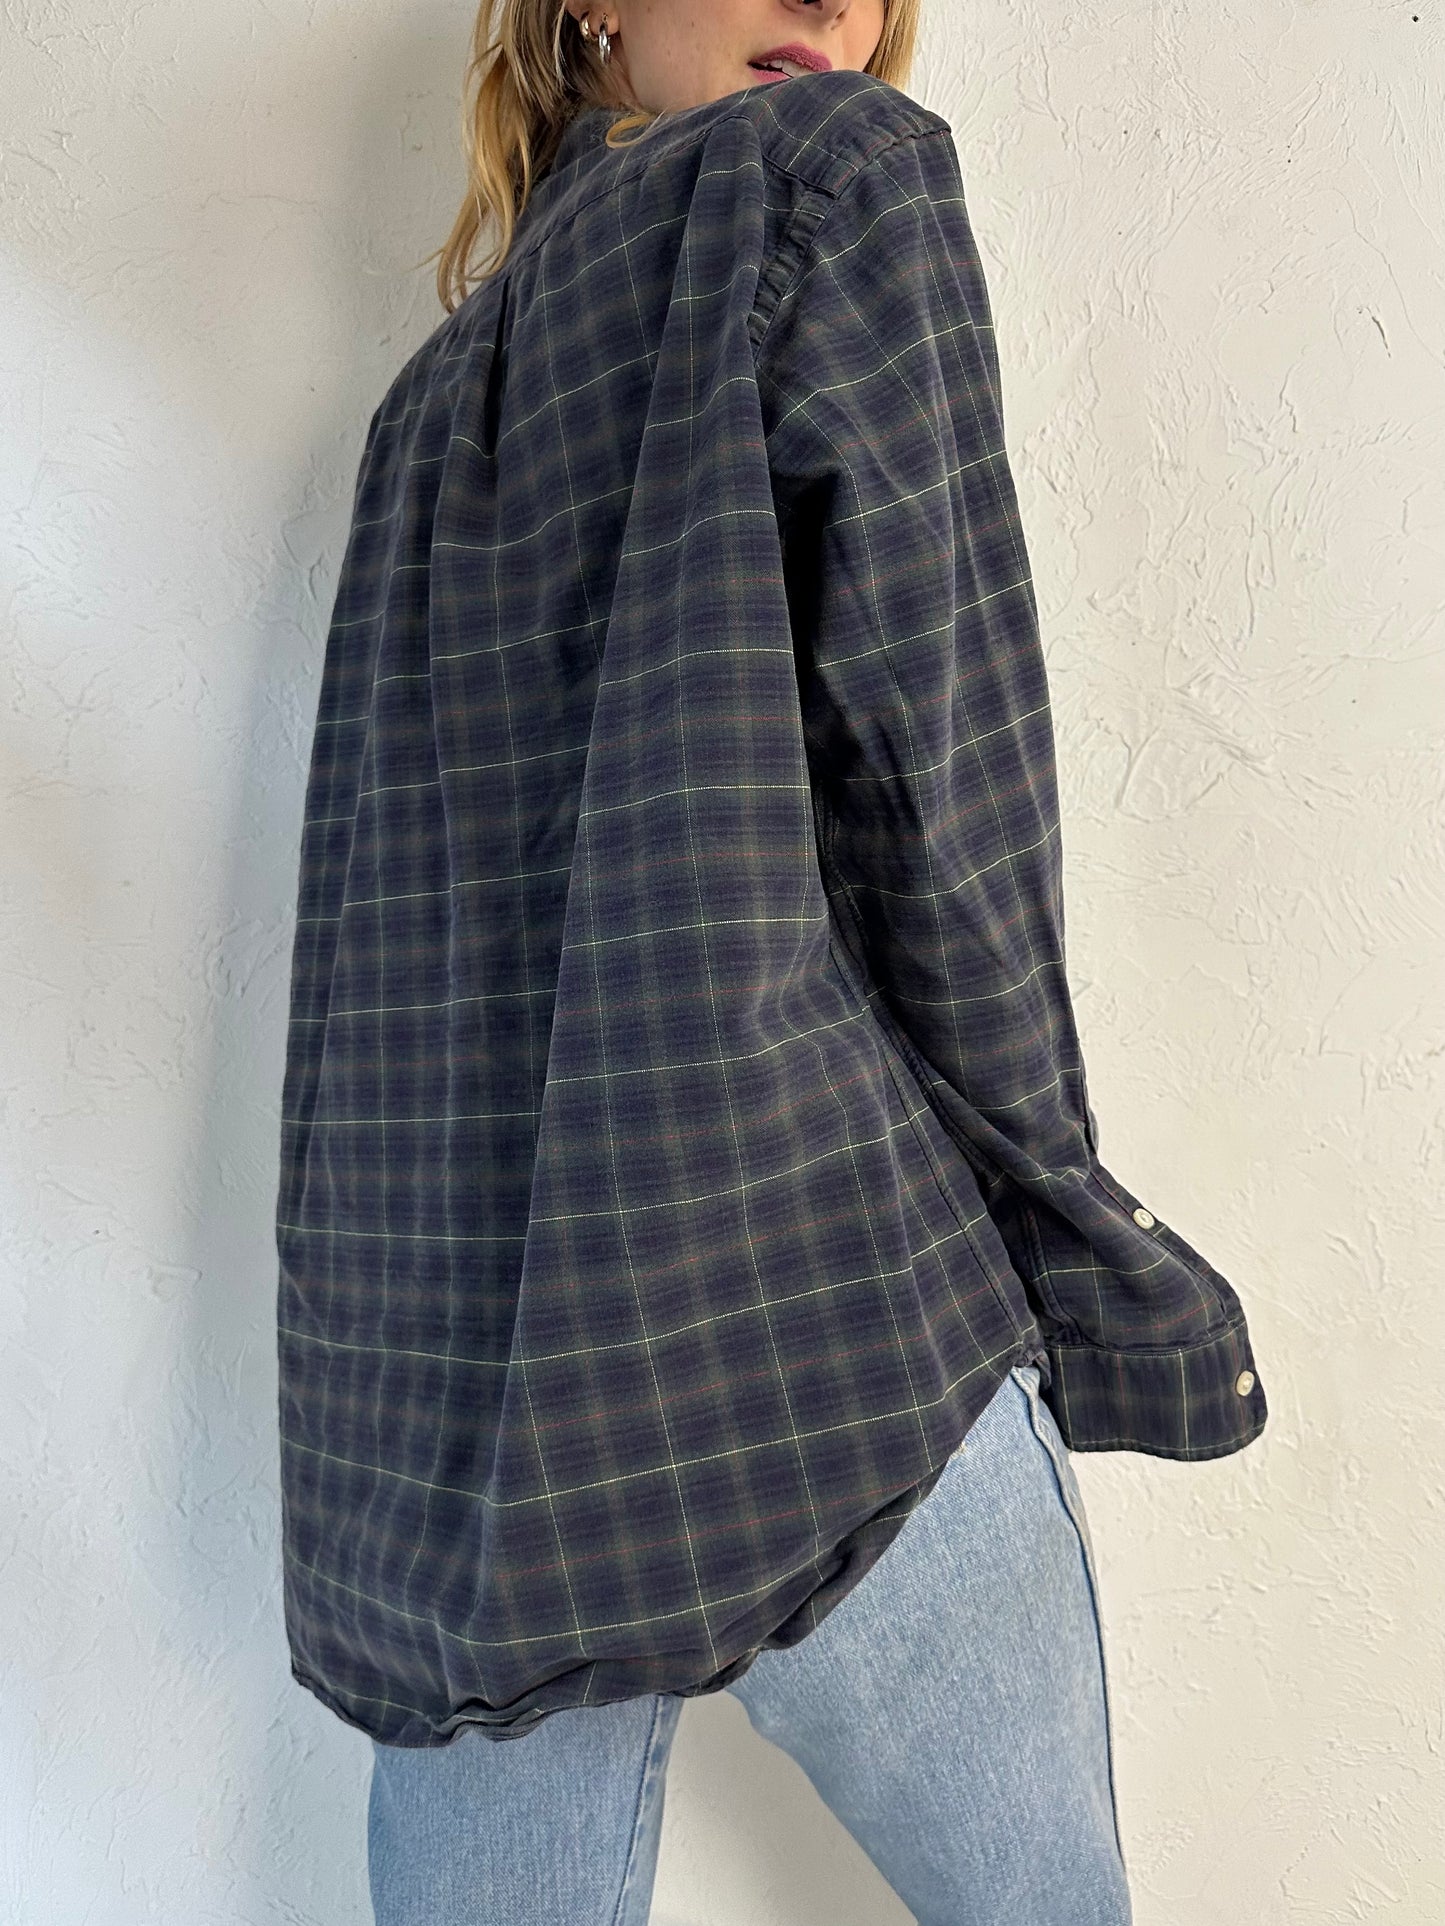 Y2k 'Ralph Lauren' Plaid Button Up Cotton Shirt / Large